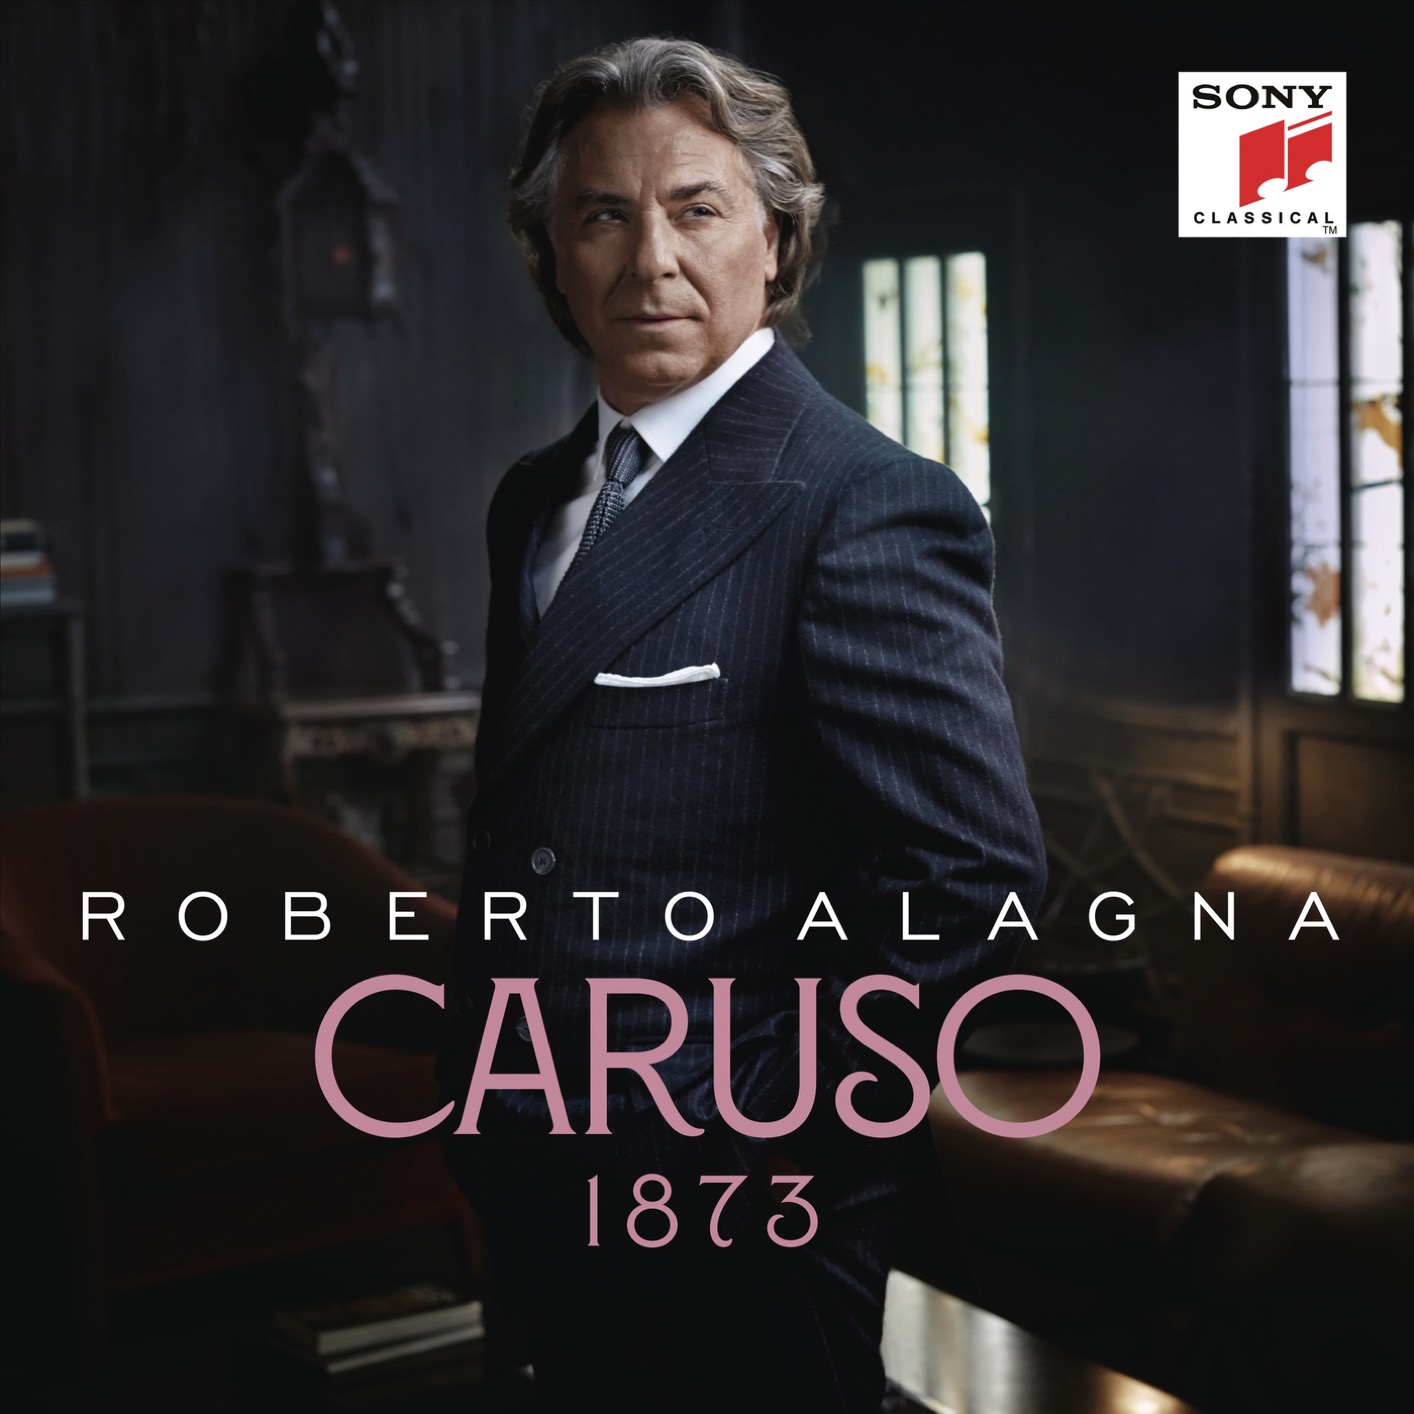 Roberto Alagna - Caruso 1873 (2019) [FLAC 24bit/96kHz]